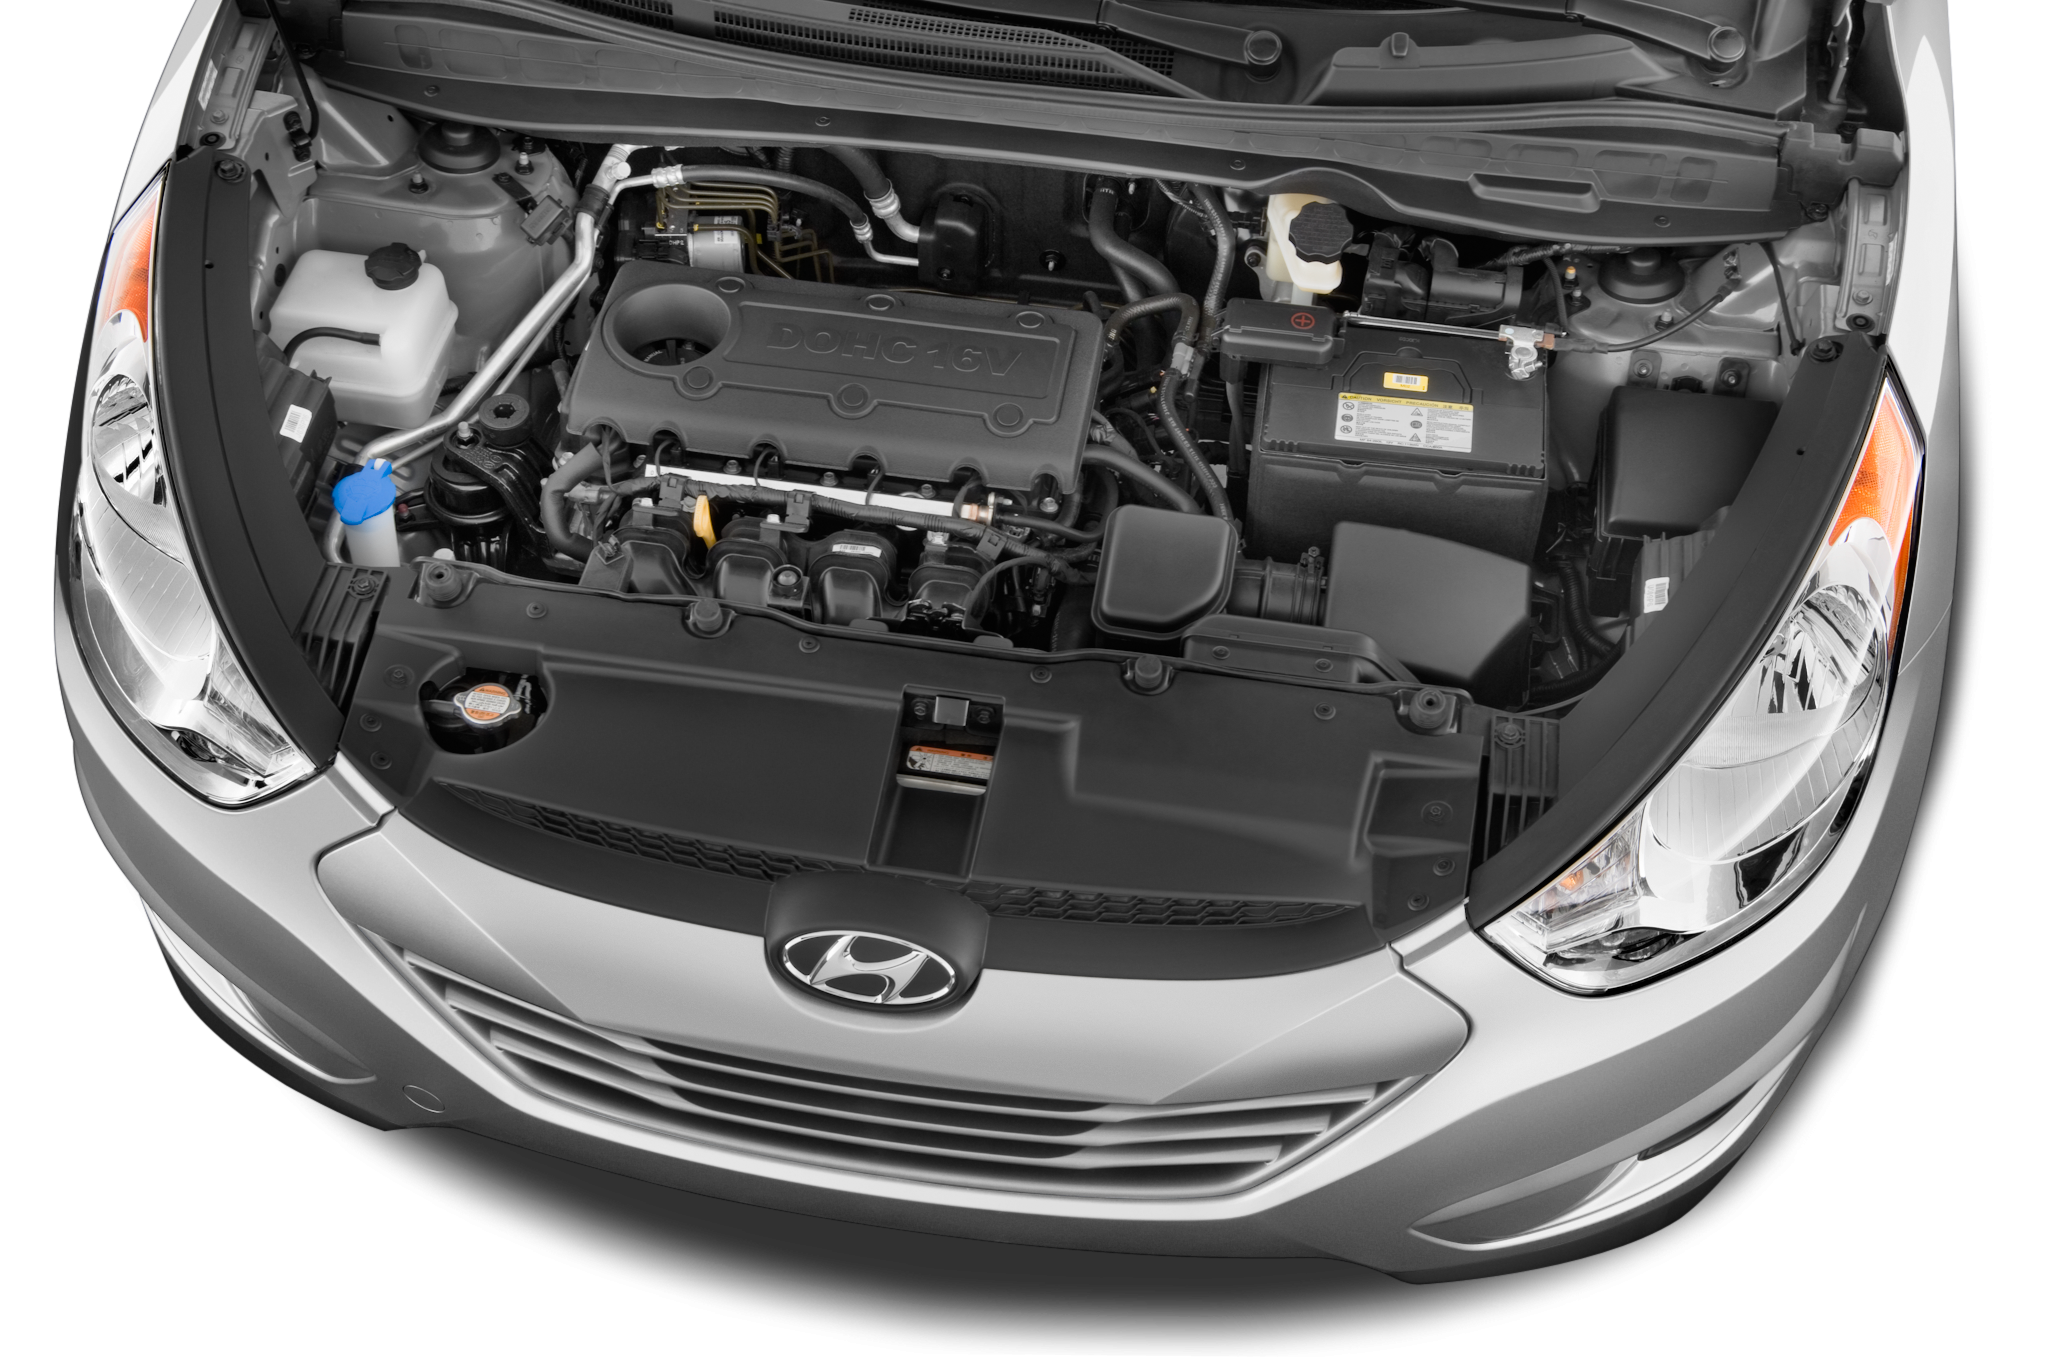 Ремонт двигателя хендай ix35. Hyundai ix35 двигатель. Hyundai ix35 двигатель 2.0. Моторный отсек Хендай ix35. Hyundai ix35 под капотом.